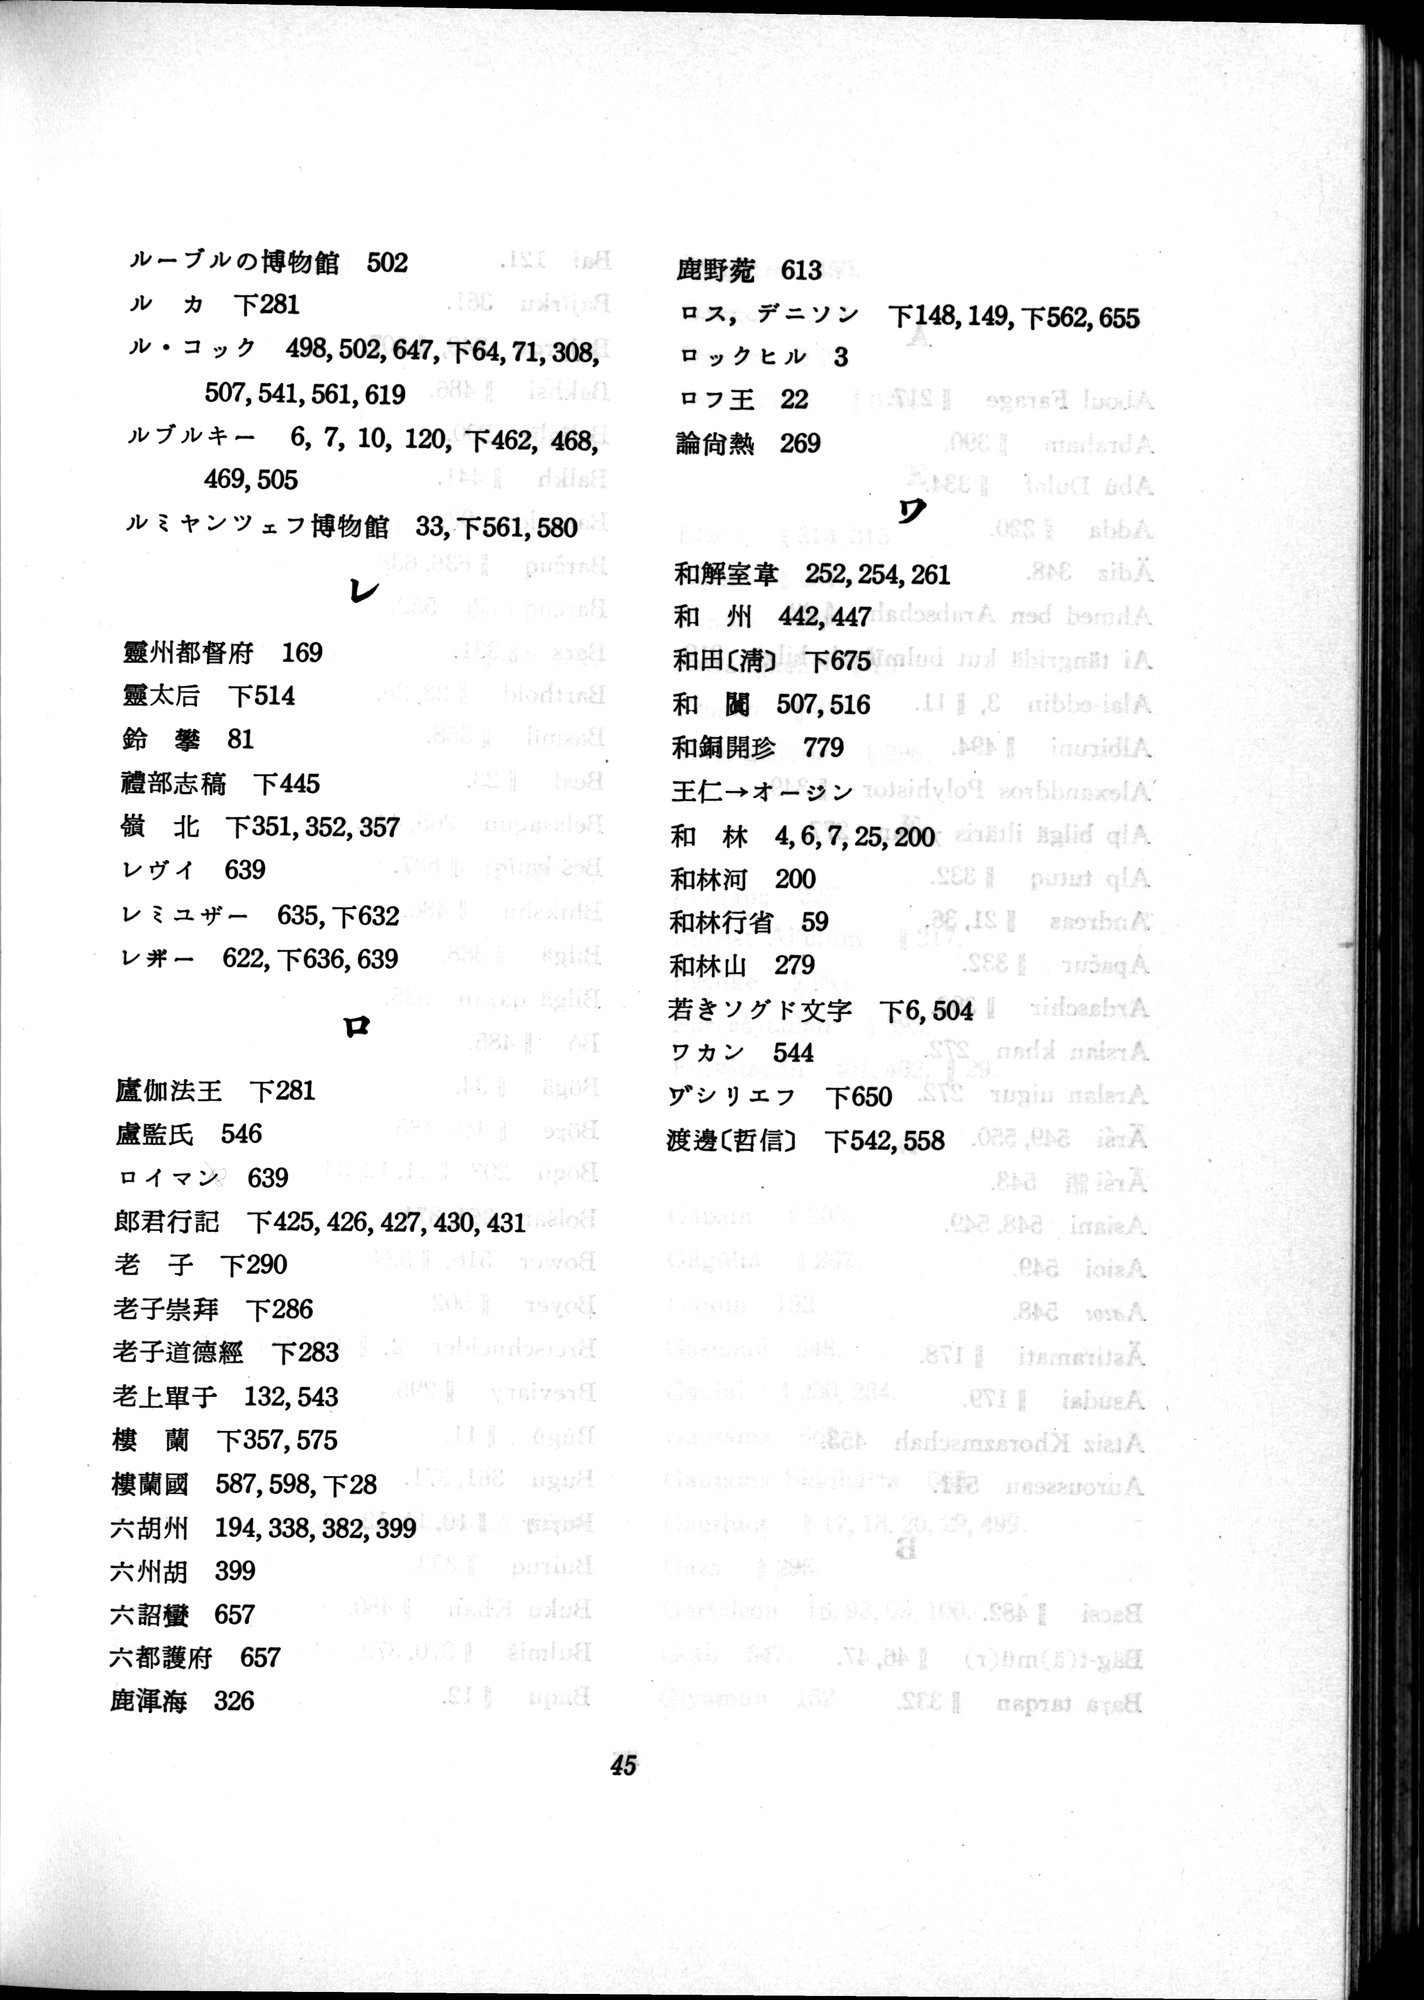 羽田博士史学論文集 : vol.2 / 762 ページ（白黒高解像度画像）